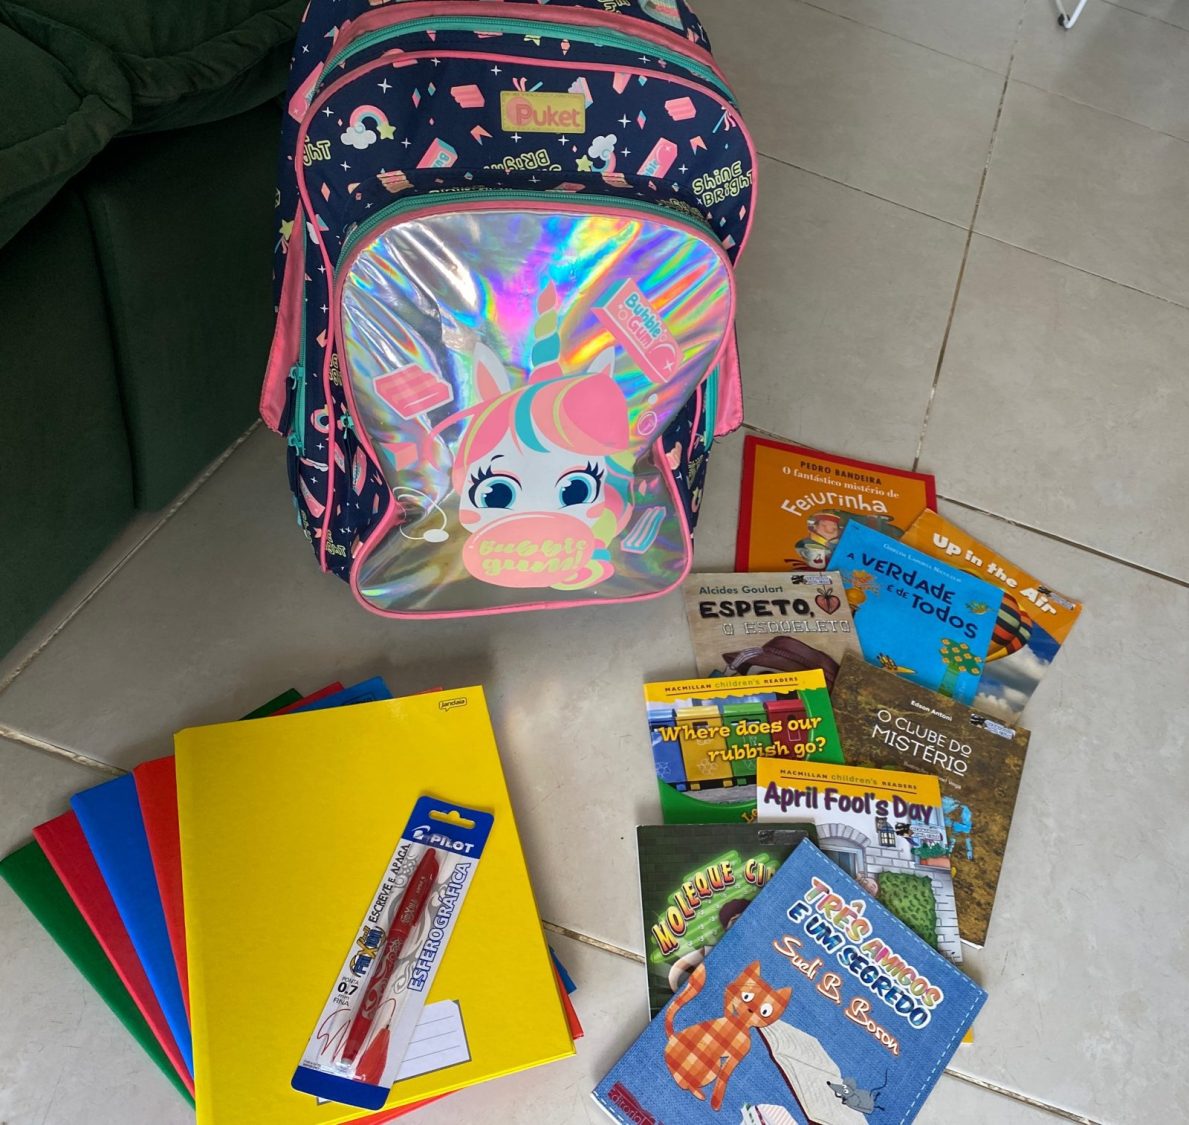 Imagem de materiais escolares: uma mochila, livros infantis, cadernos coloridos e uma caneta.